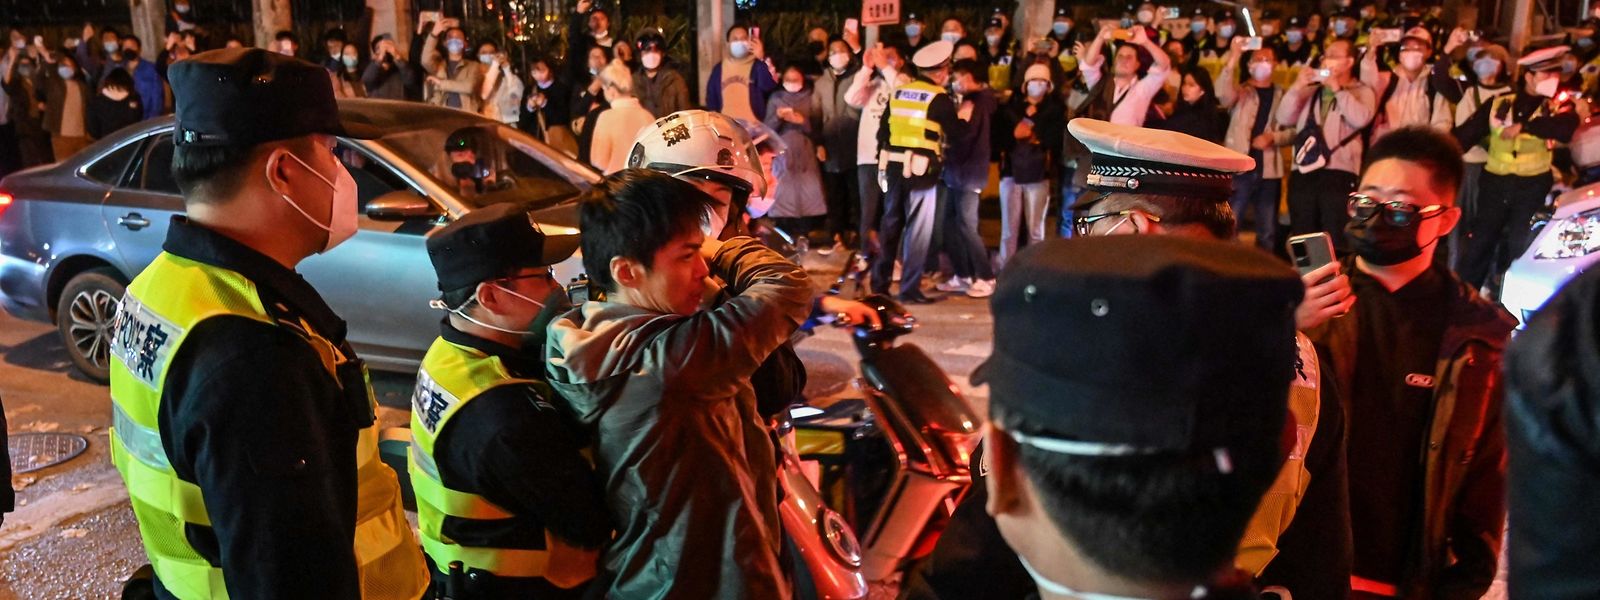 Die Polizei bemüht sich, die Situation in Shanghai unter Kontrolle zu bekommen. In China sind die größten Proteste seit Jahrzehnten ausgebrochen.